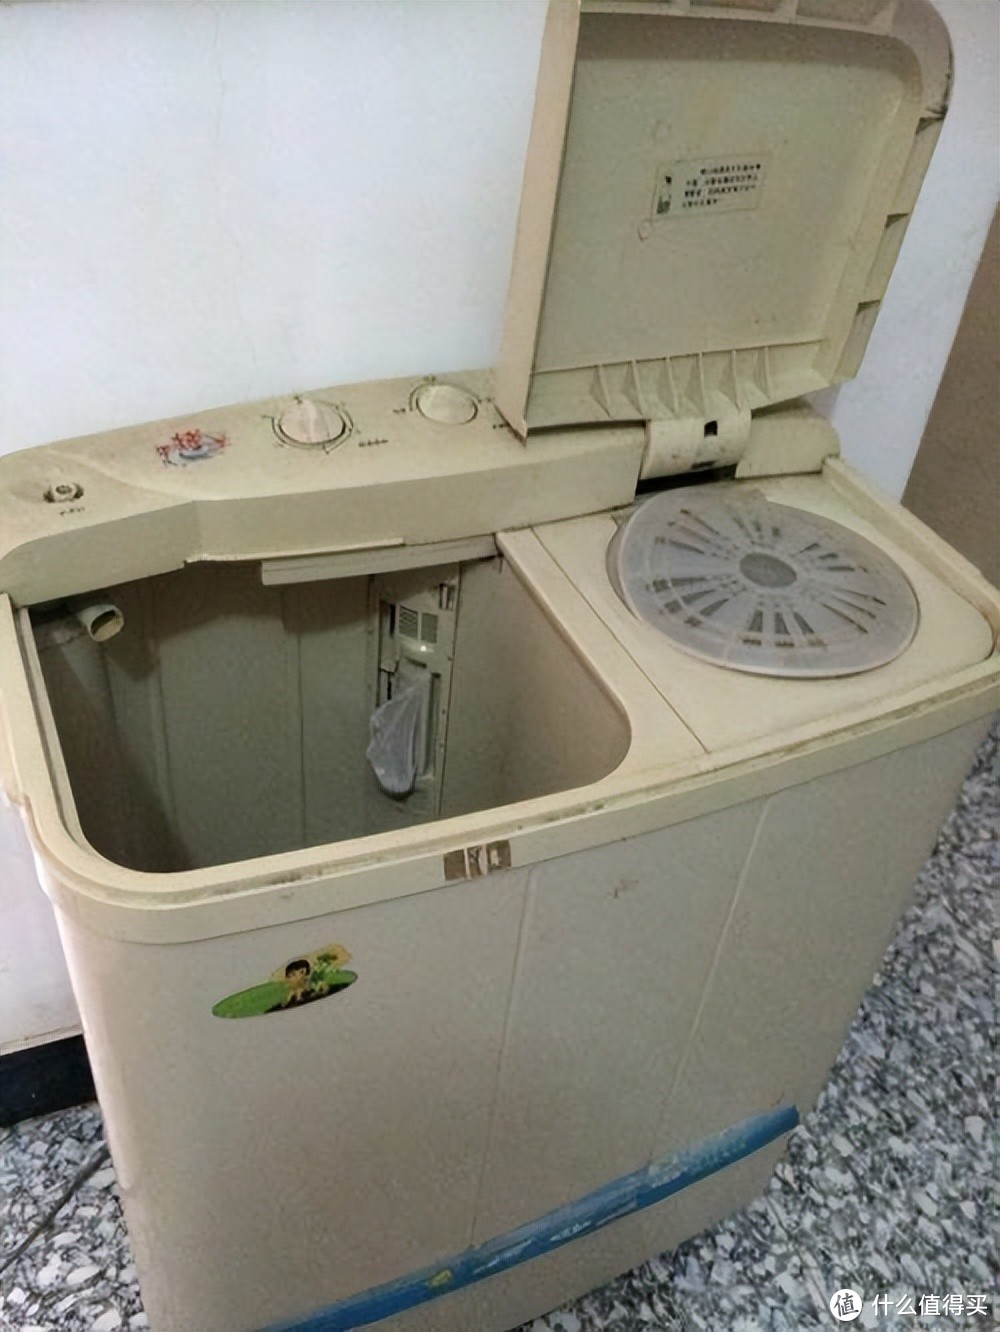 都说双缸洗衣机不好，为何现在这么火？我用了15年来说说真实感受